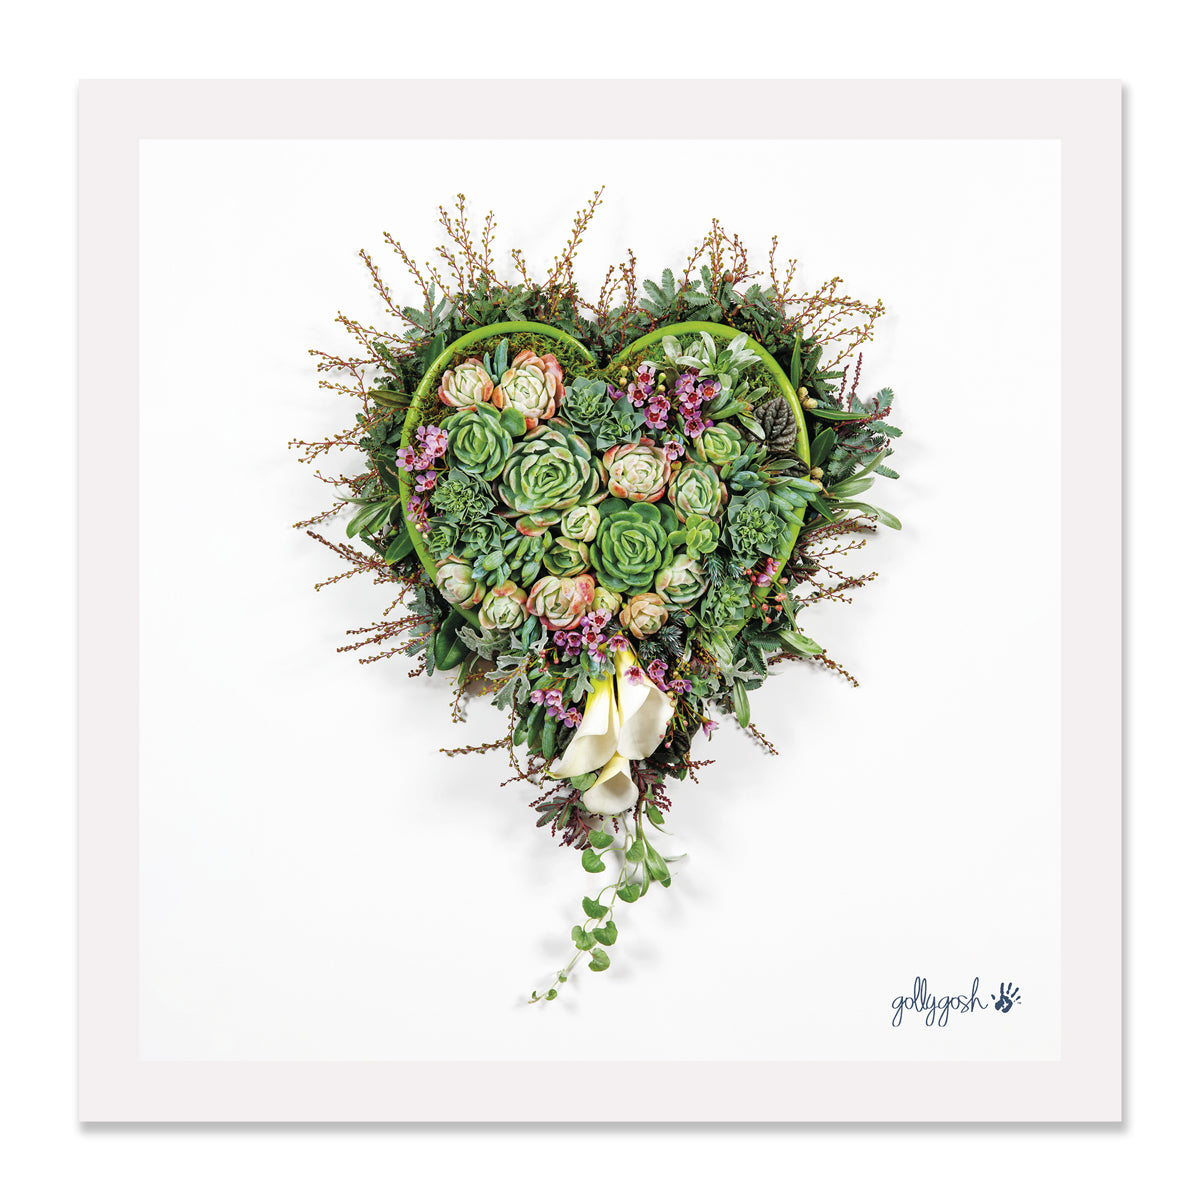 Succulent Heart Fine Art Print